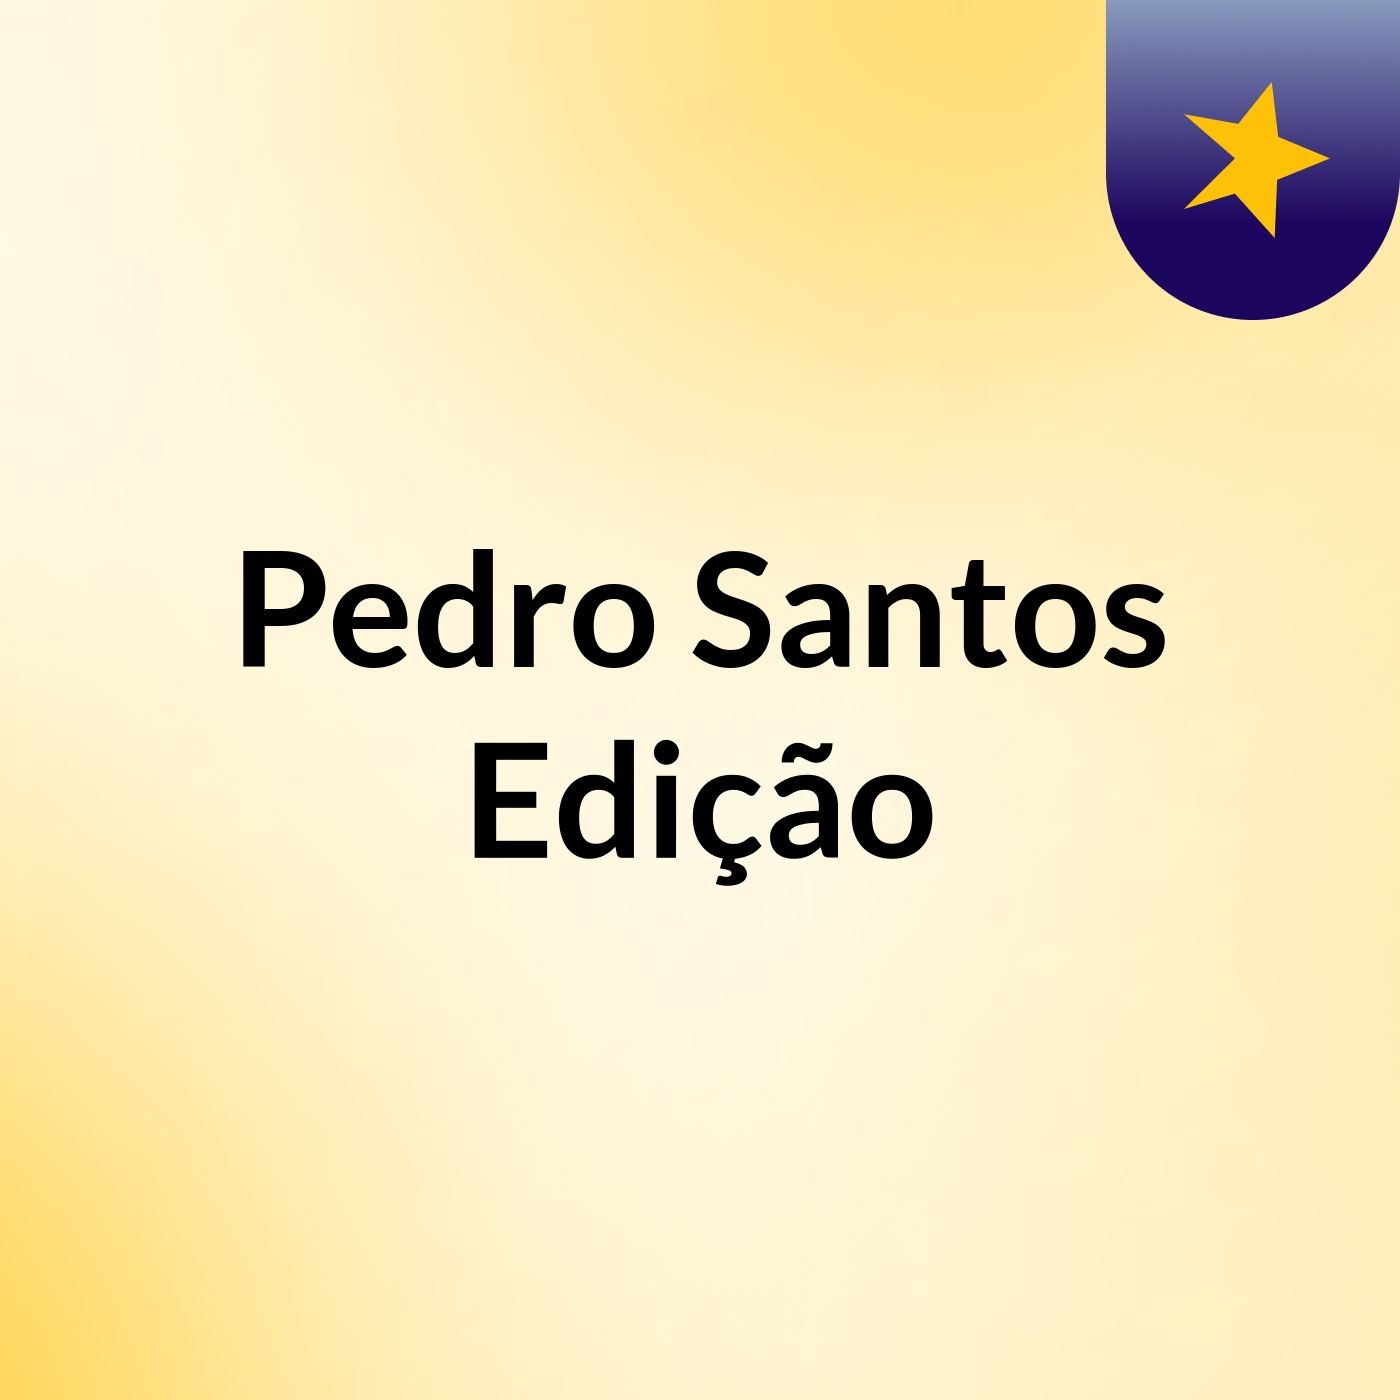 Pedro Santos Edição